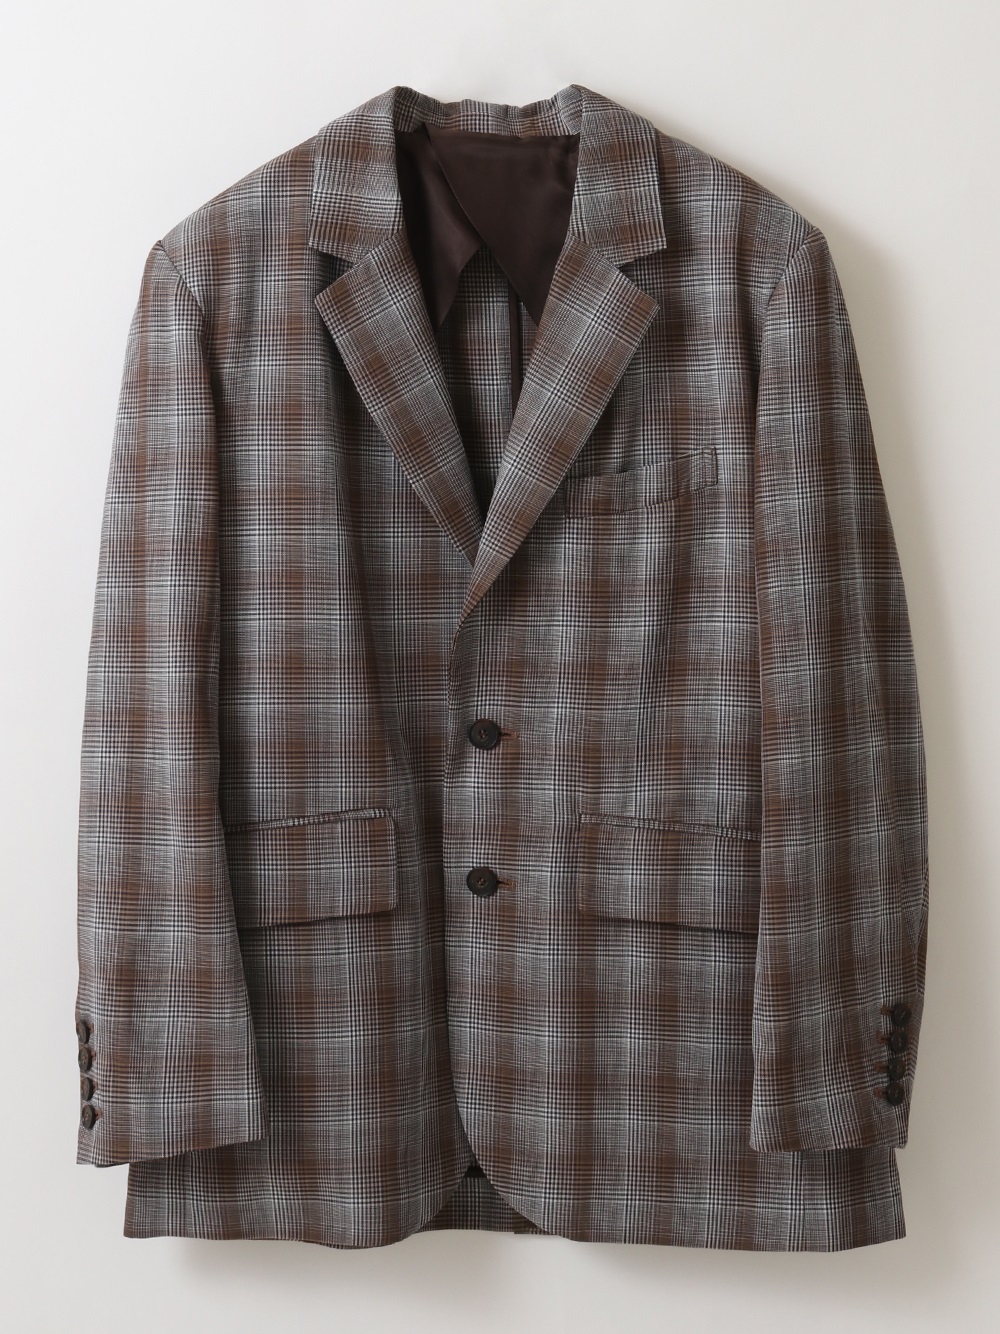 Glen check tailored jacket(11グレー-フリー)